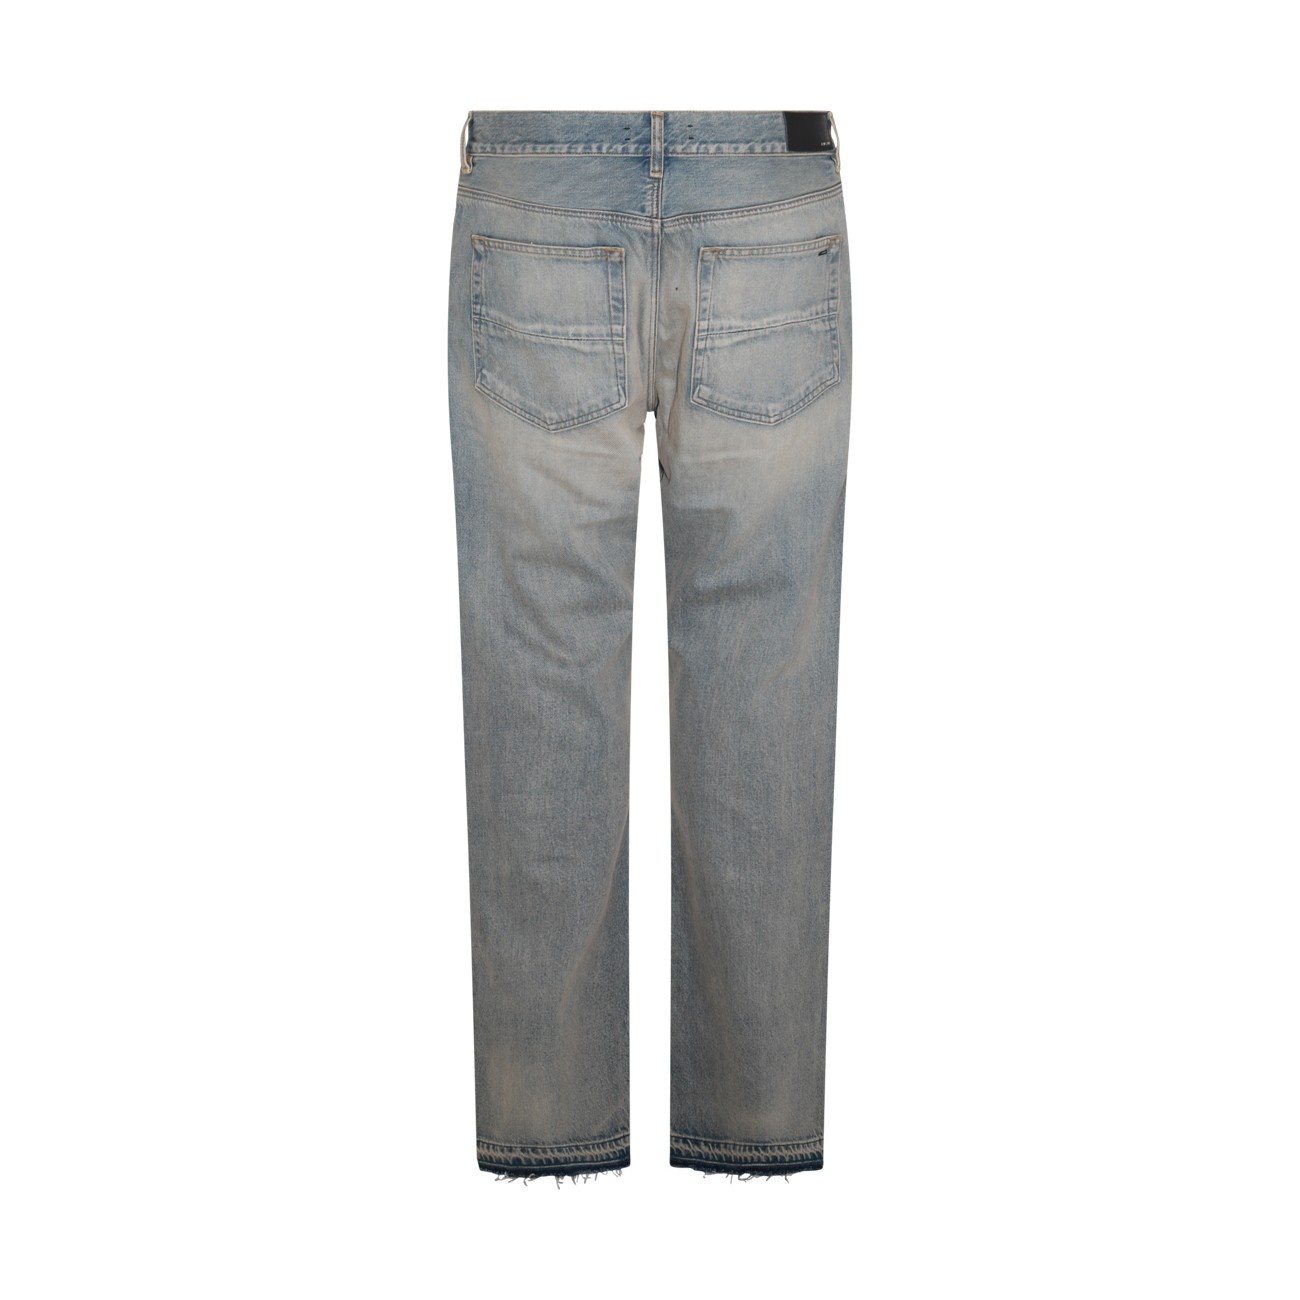 indigo blue cotton denim jeans - 2